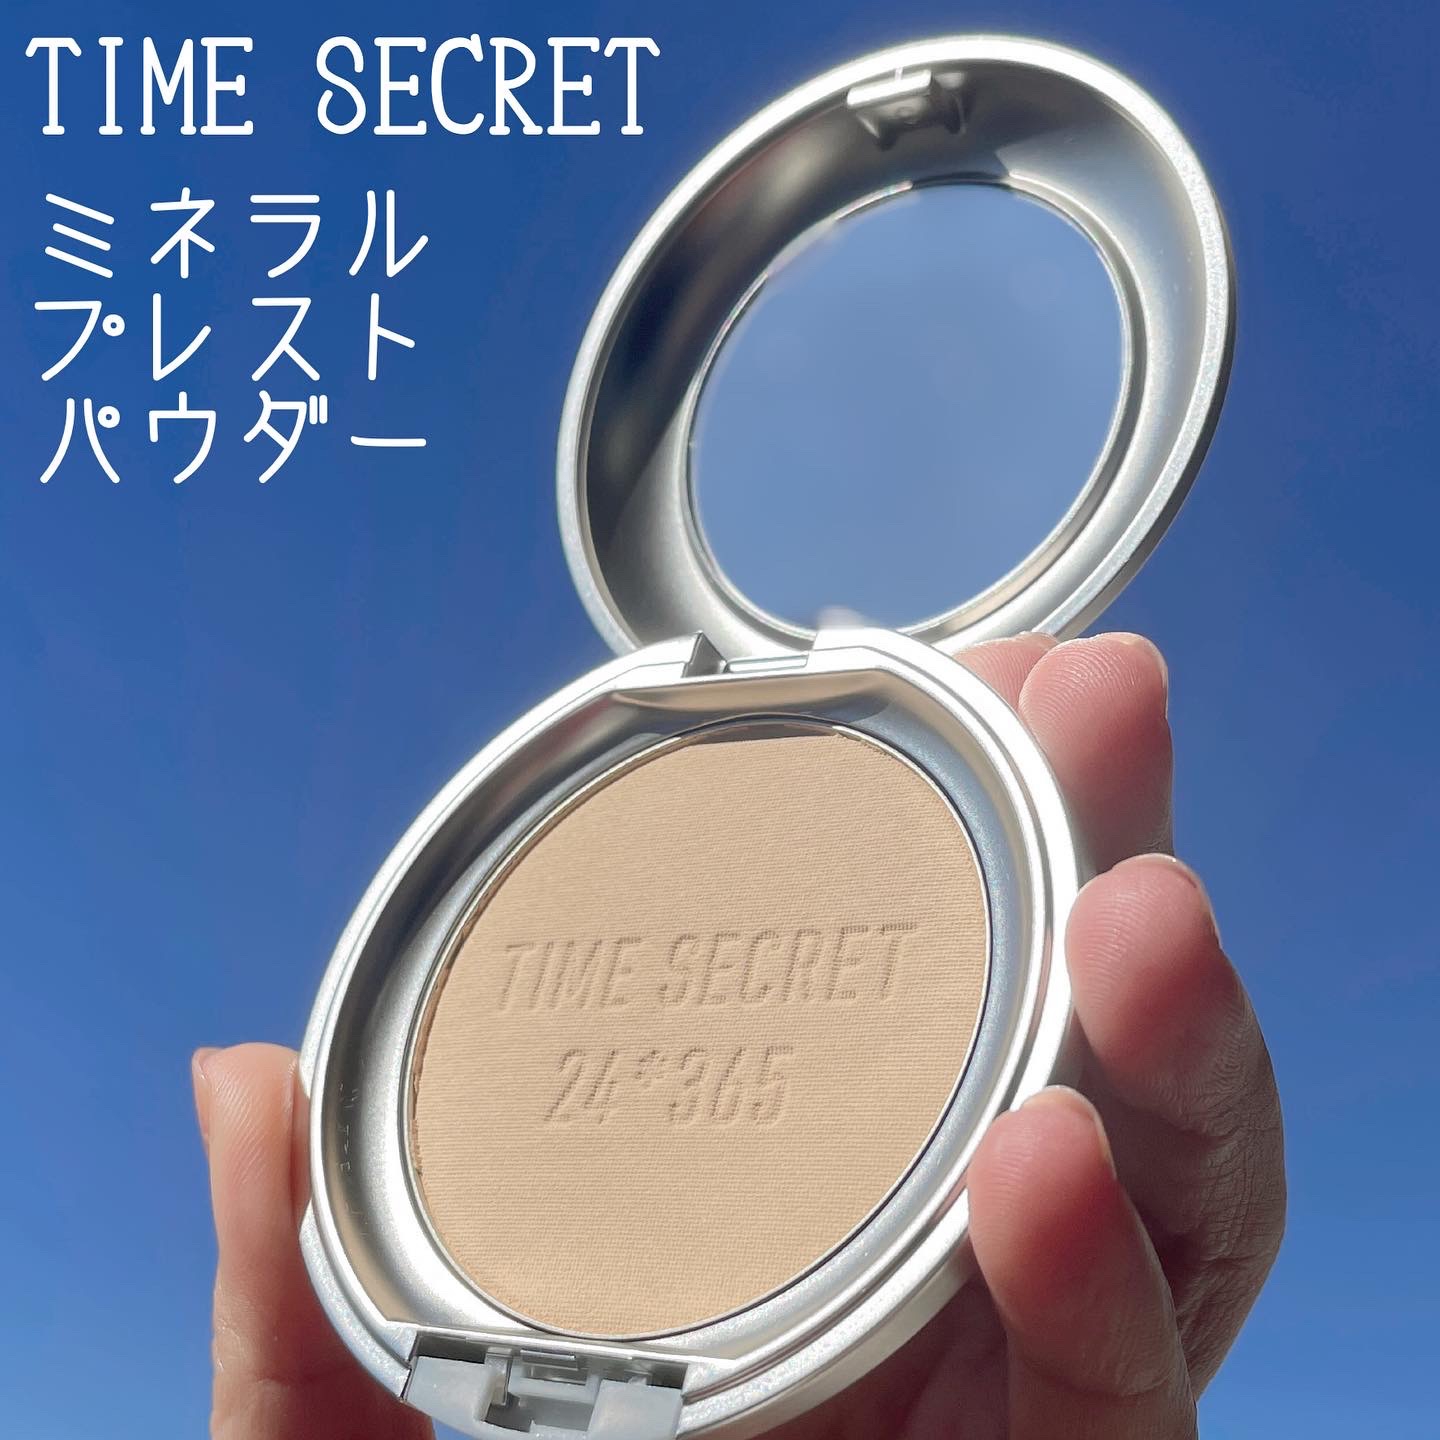 TIME SECRET(タイムシークレット) ミネラル 薬用プレストパウダーの良い点・メリットに関するなゆさんの口コミ画像2